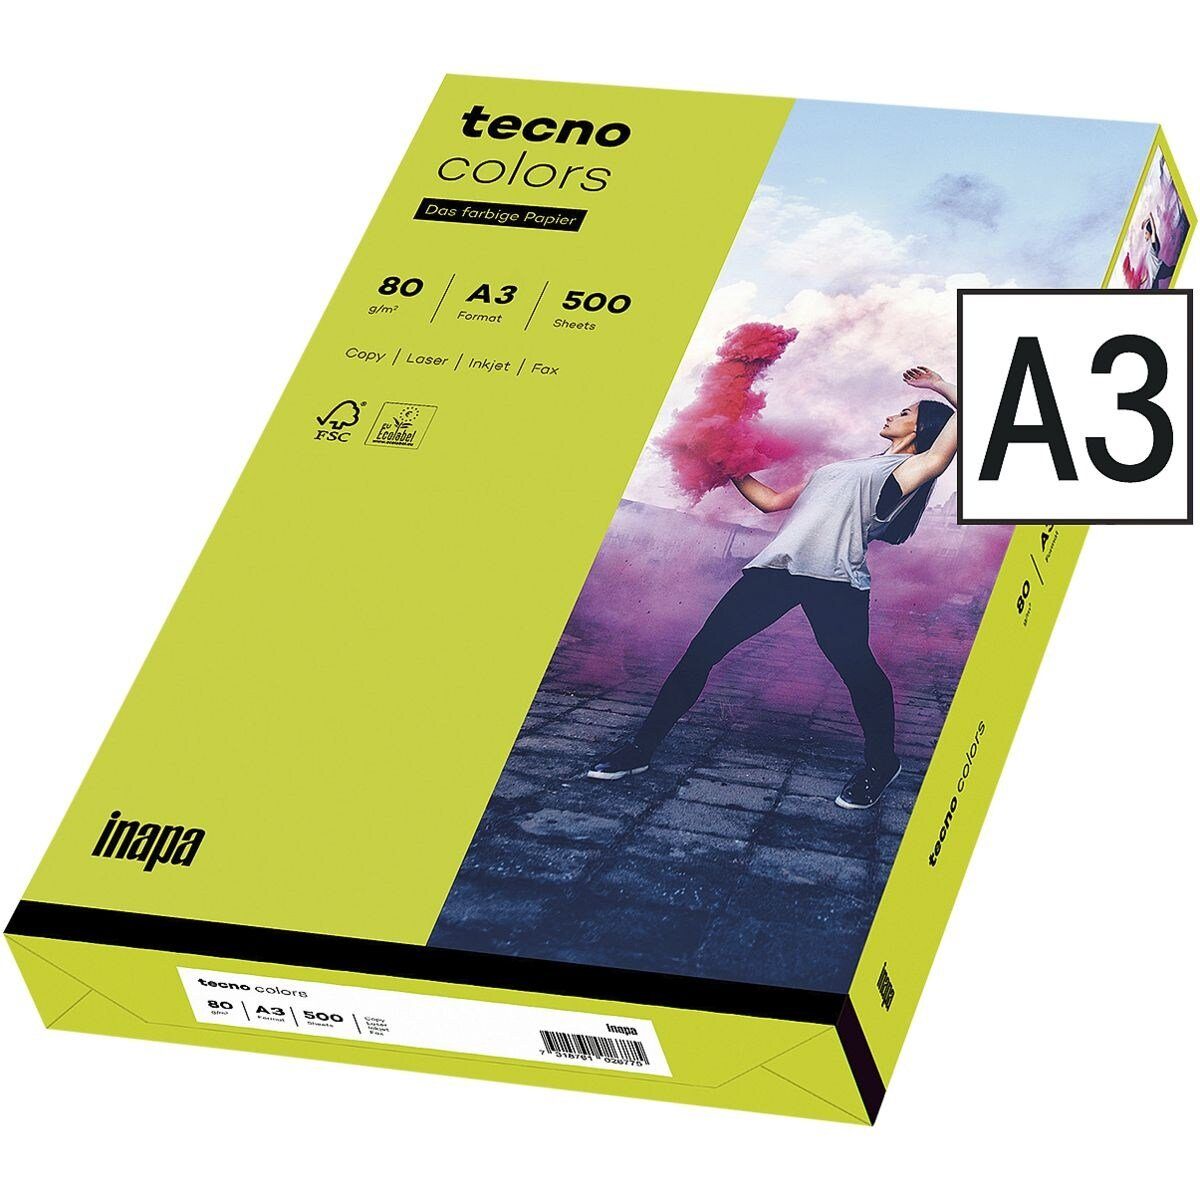 Inapa tecno Drucker- und Kopierpapier Rainbow / tecno Colors, Intensivfarben, Format DIN A3, 80 g/m², 500 Blatt leuchtendgrün